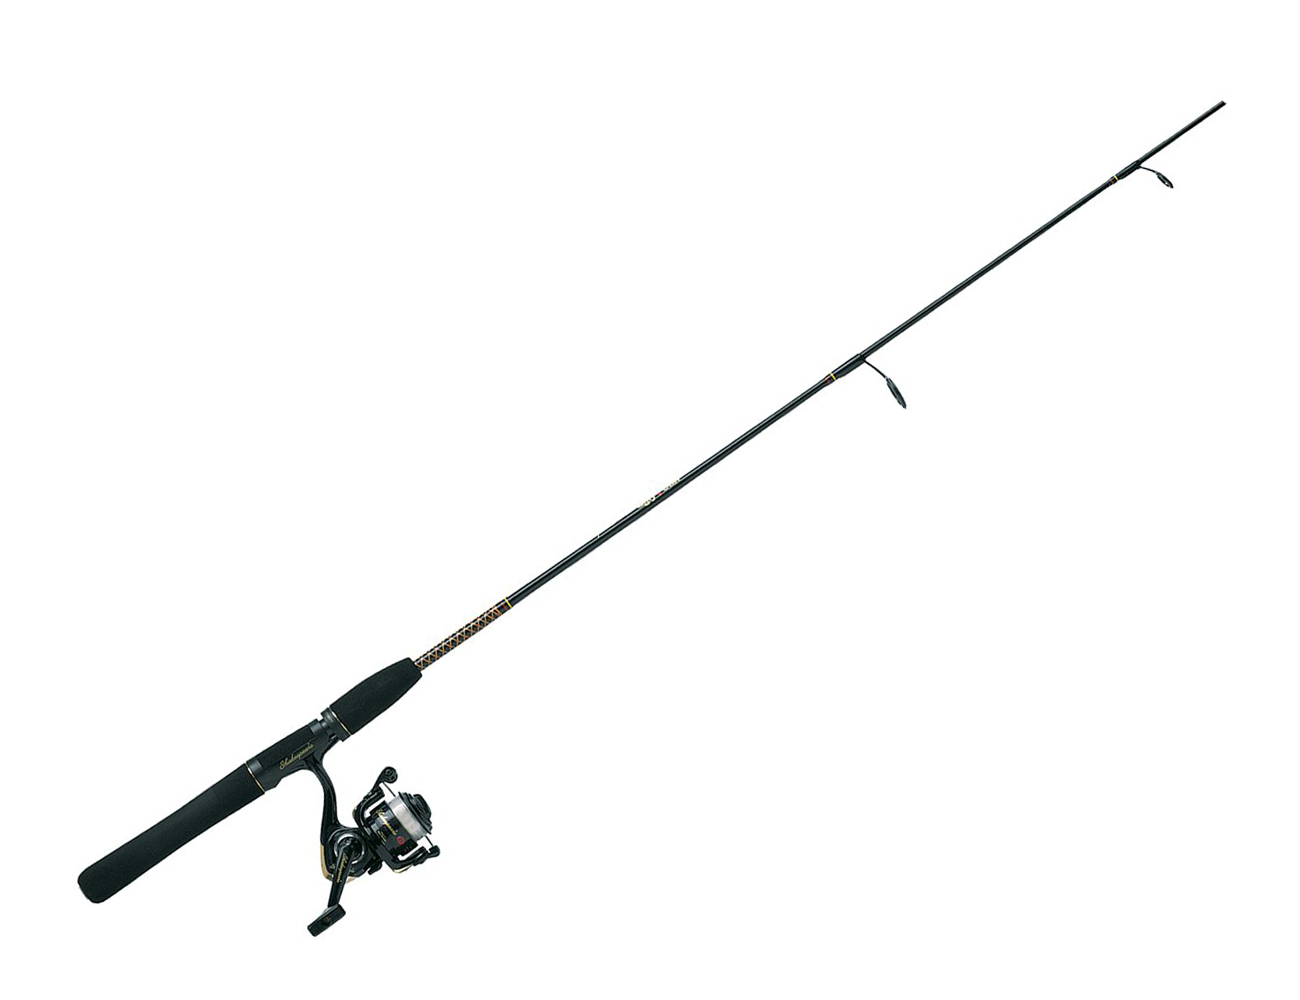 Fishing pole fishing rod clip - Fishing Pole Clip Art